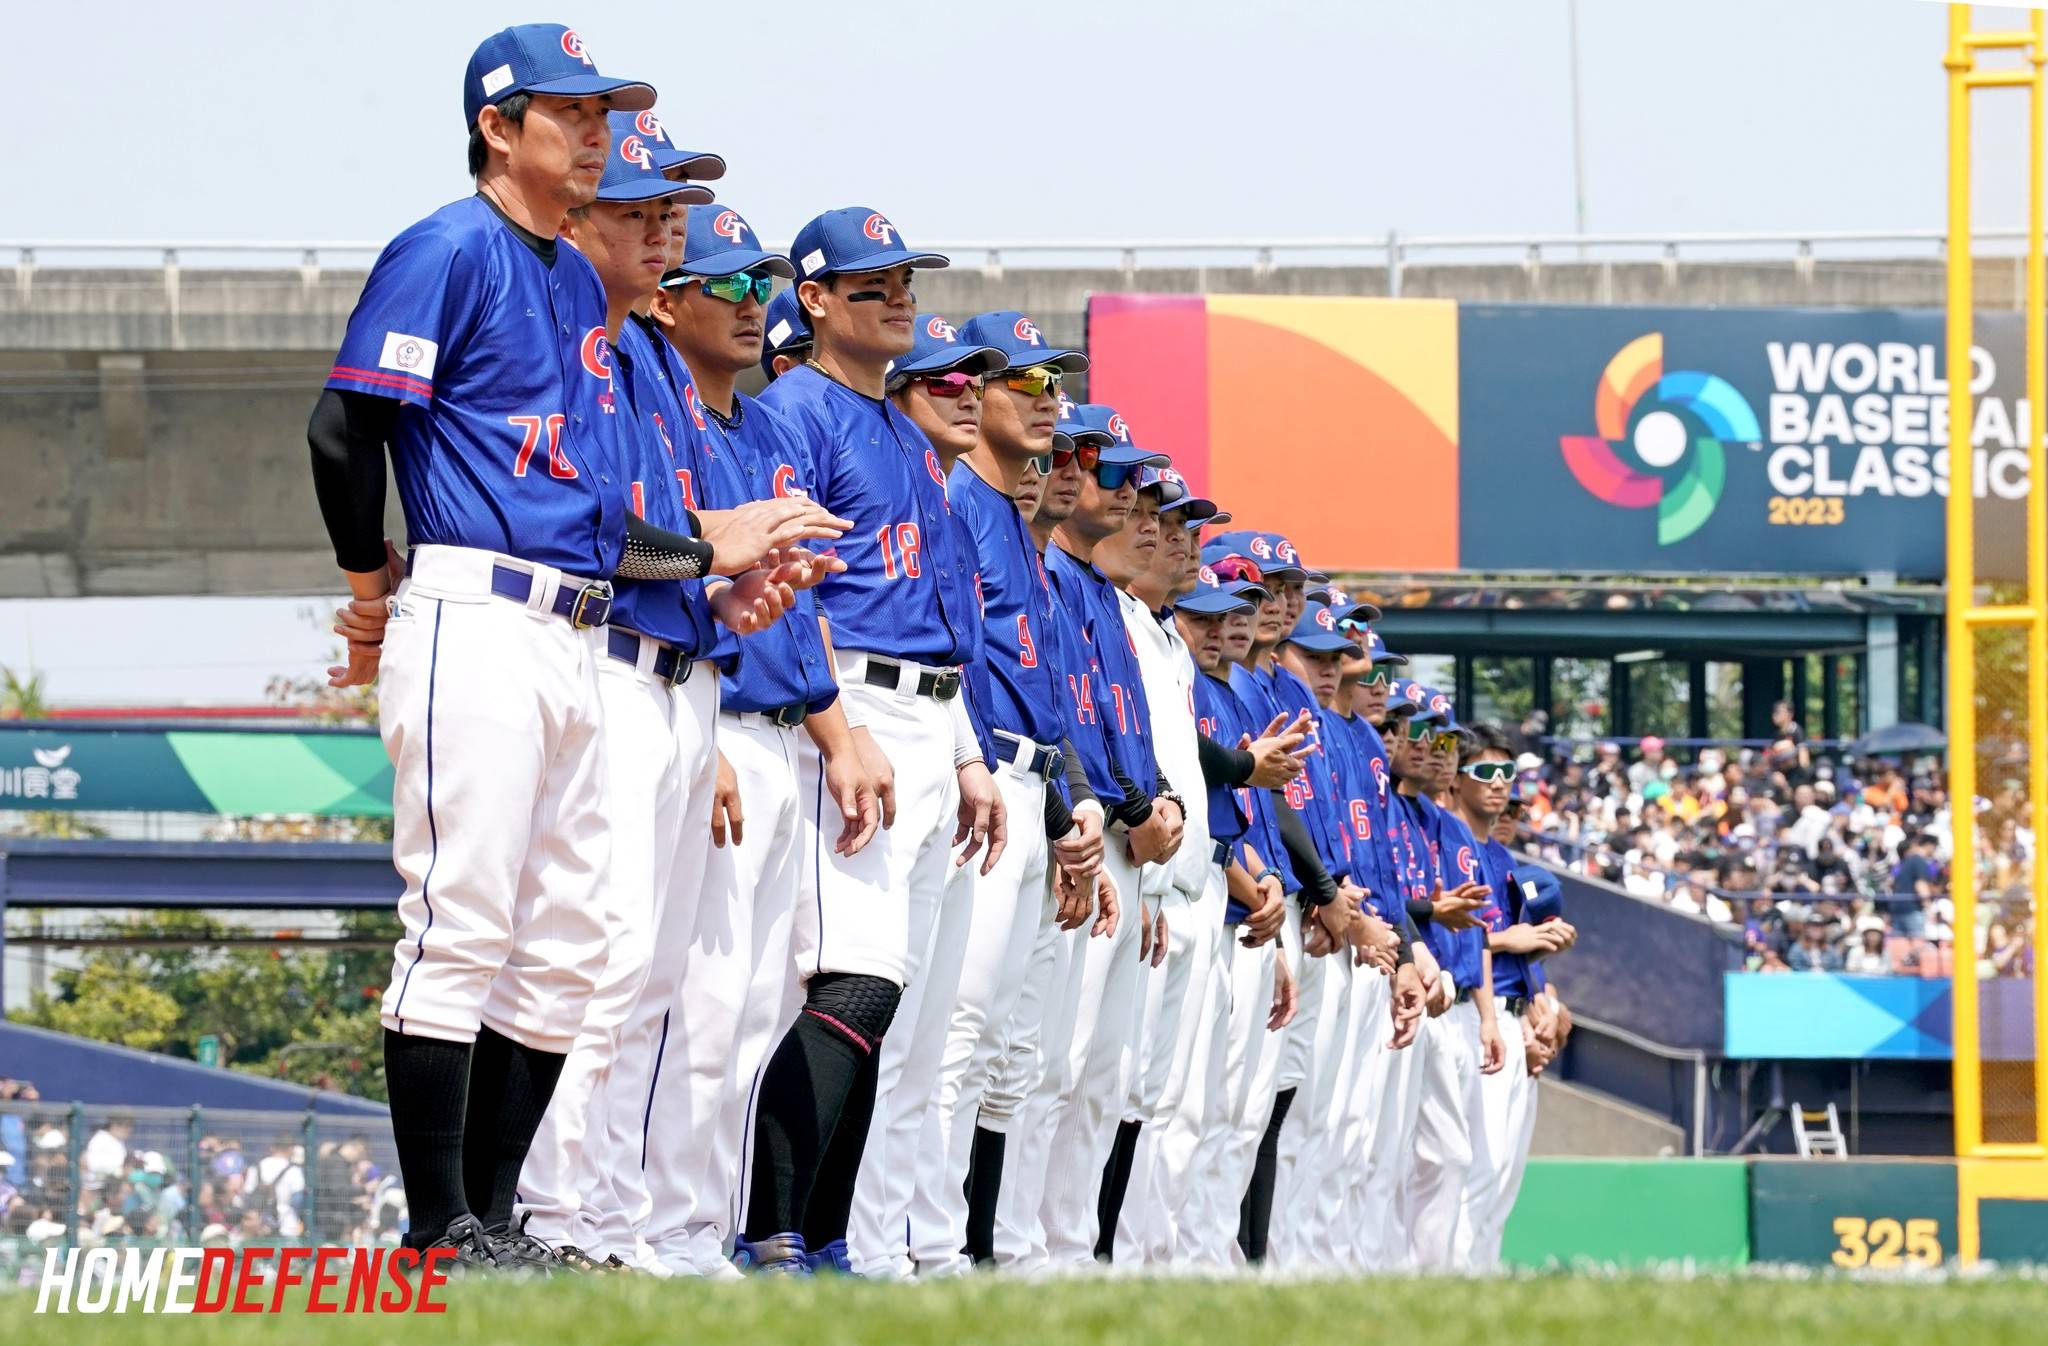 2023世界棒球經典賽（WBC）A組預賽競爭激烈，雖然中華隊無緣晉級八強前進東京，但連日來幾場的精采比賽，無疑點燃起全台球迷的棒球魂。不過就有網友好奇，明明台灣人日常對棒球的接觸遠低於籃球，「為啥會喜歡看棒球比賽？」掀起一番討論。